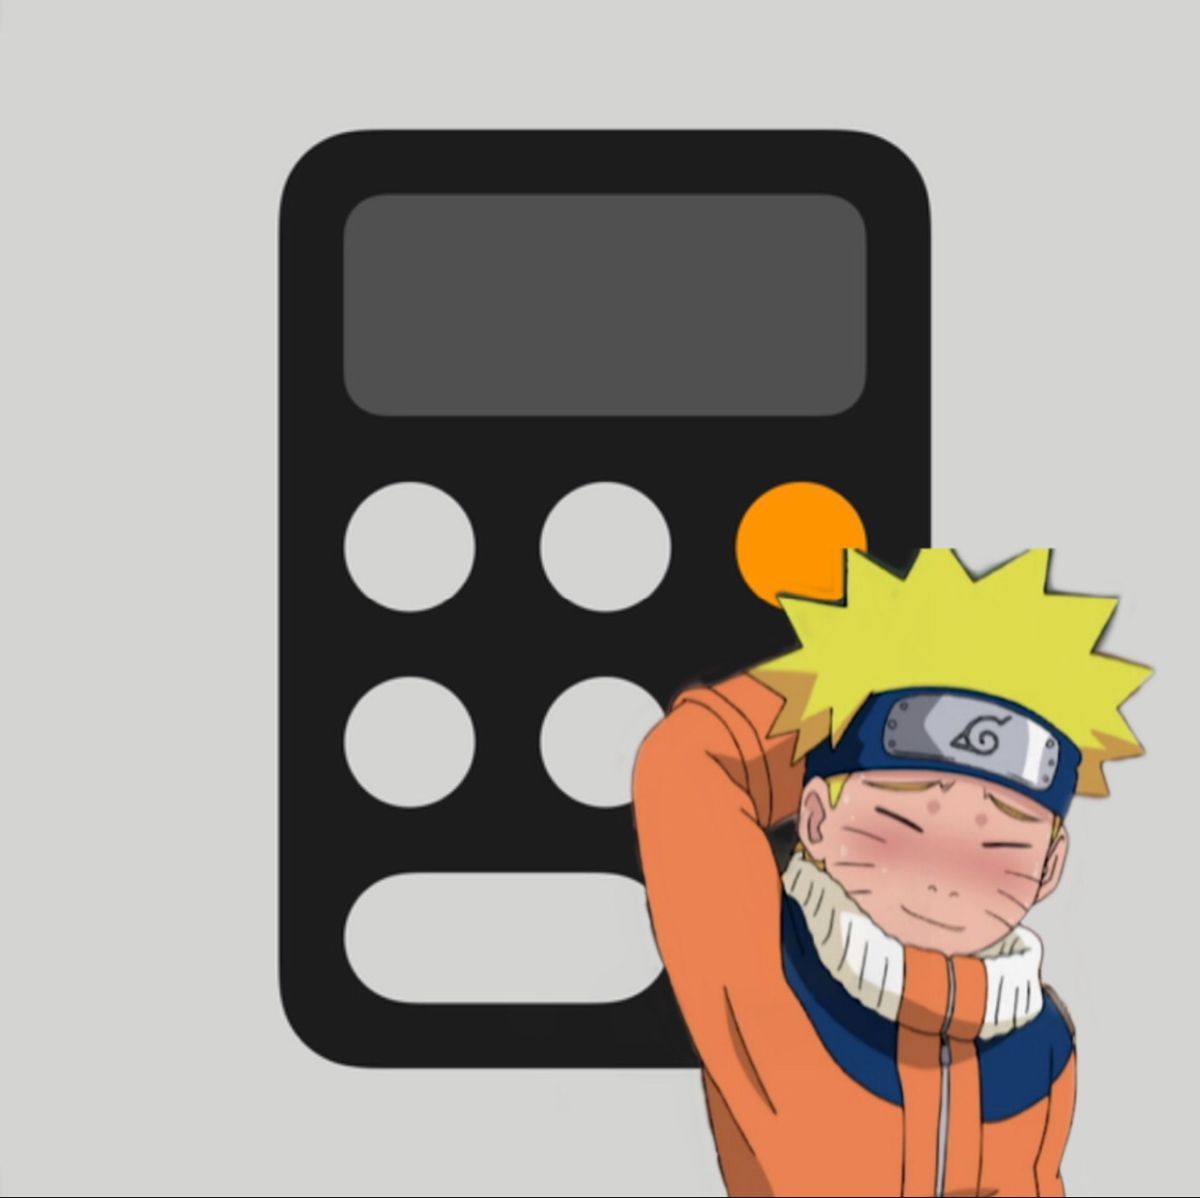 Naruto anime app icon. App icon, App anime, Anime snapchat